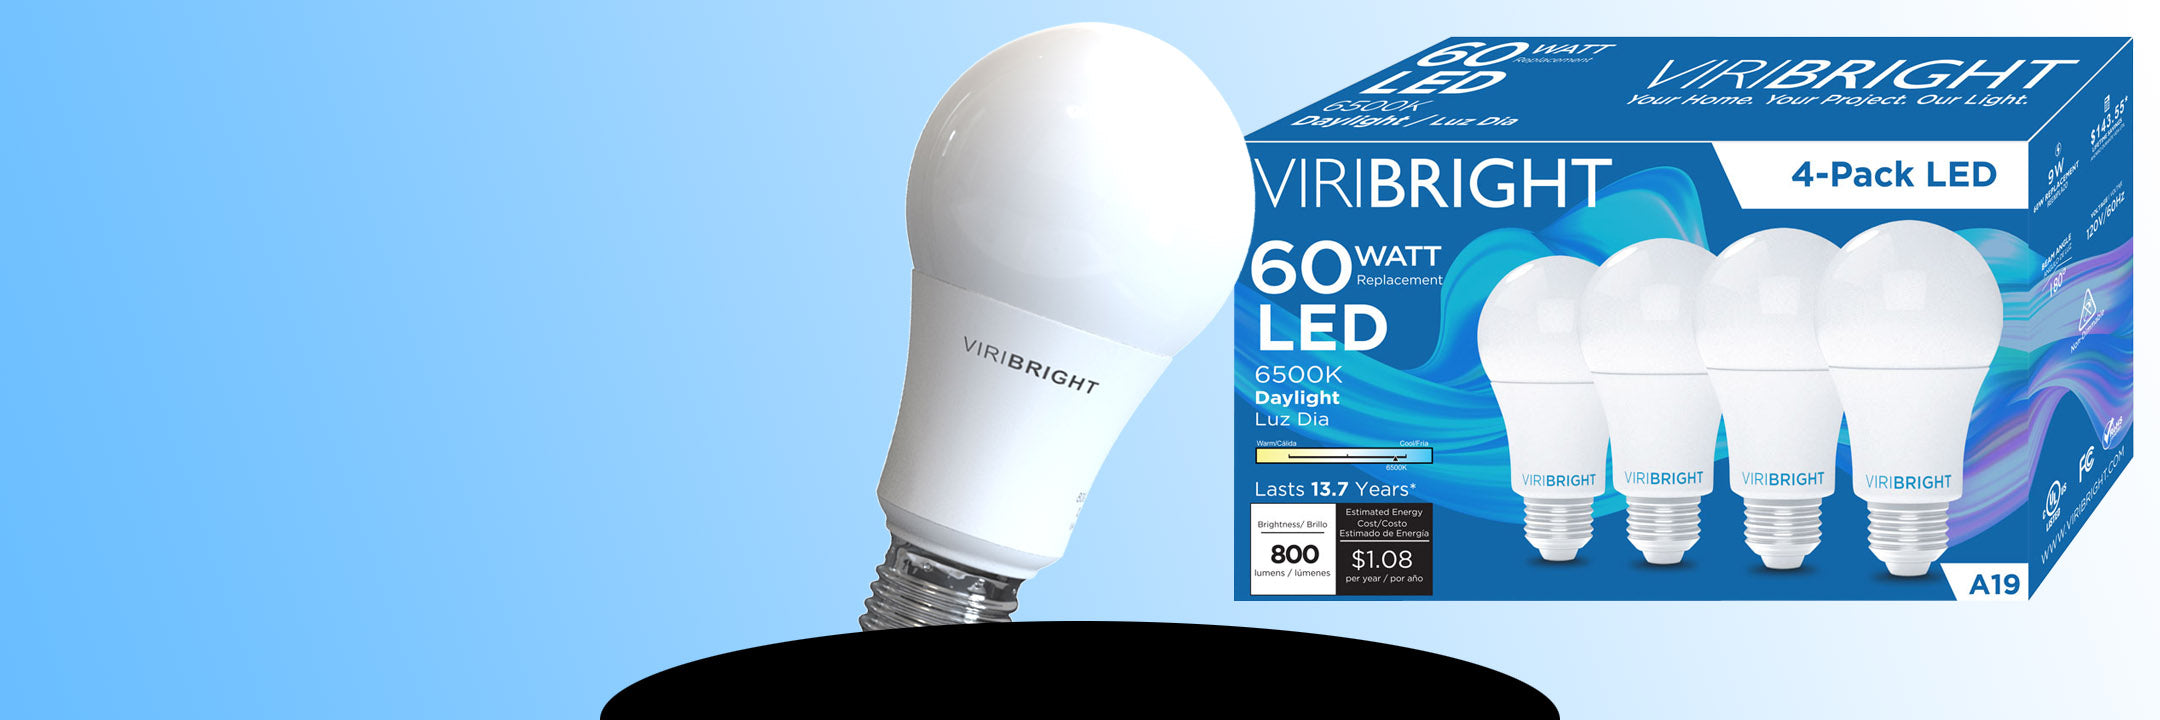 Viribright LED General Light bulbs for all Applications